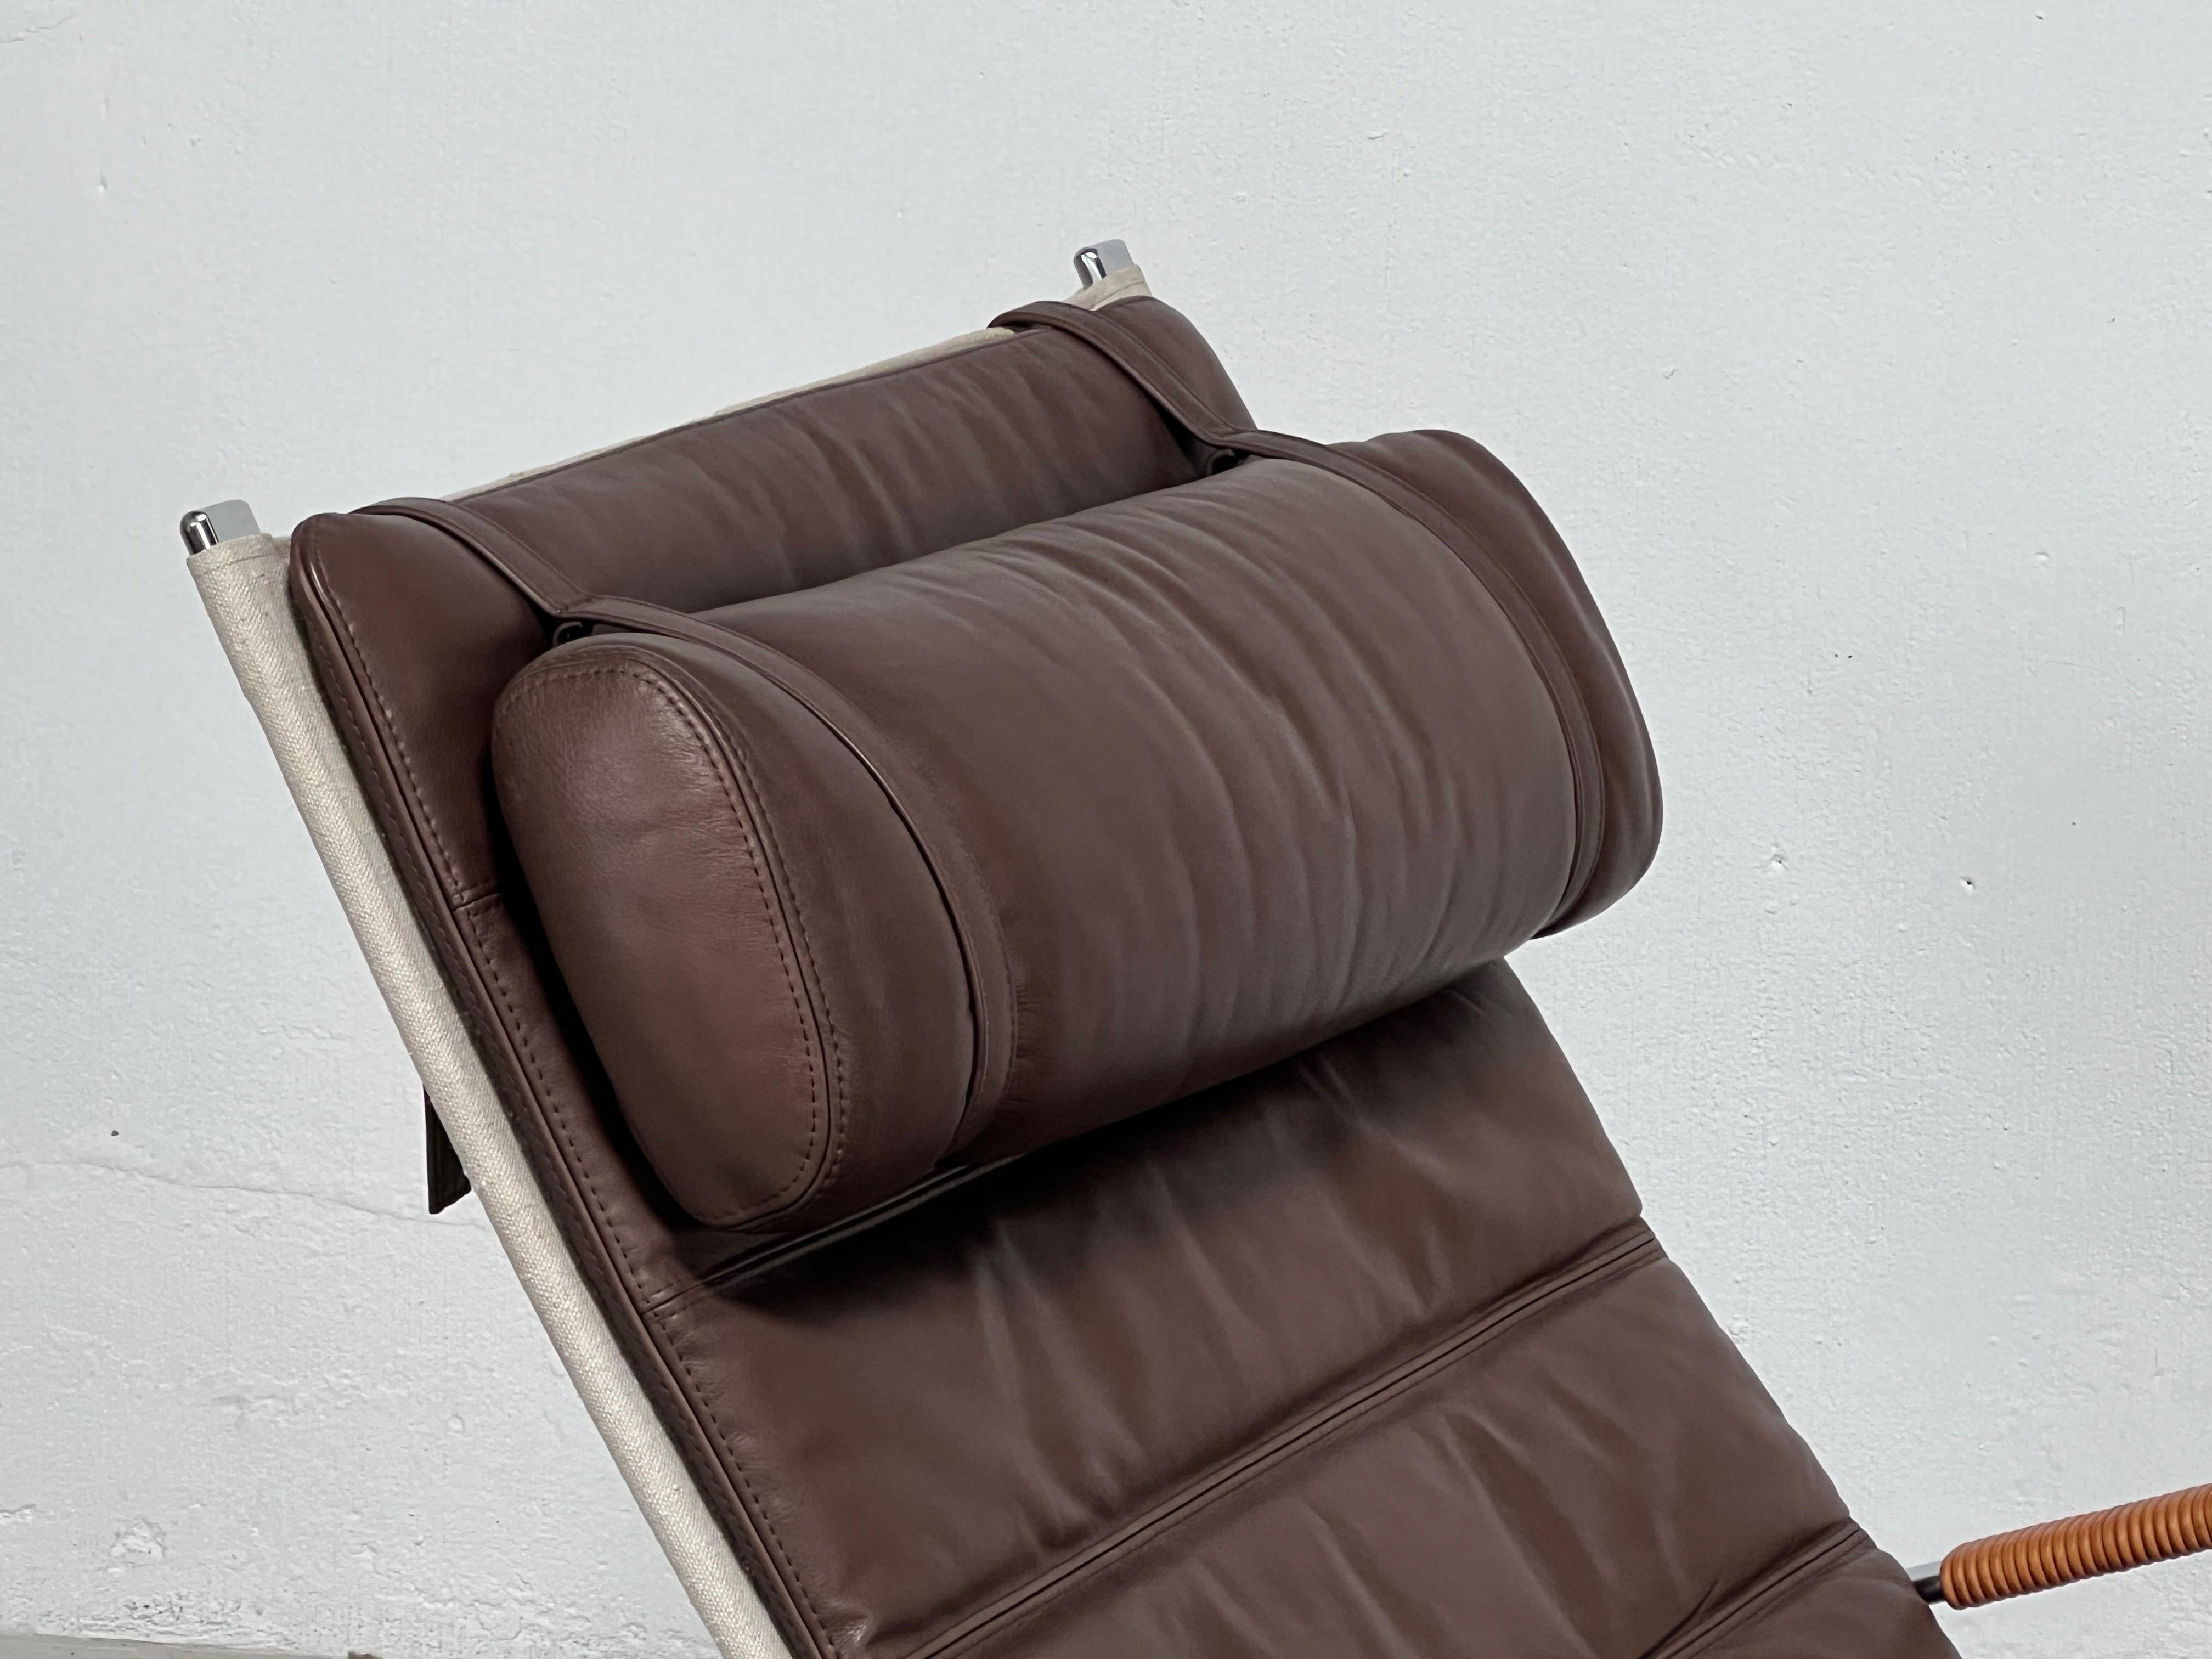 Leather Vintage Grasshopper Chair by Preben Fabricius + Jørgen Kastholm For Sale